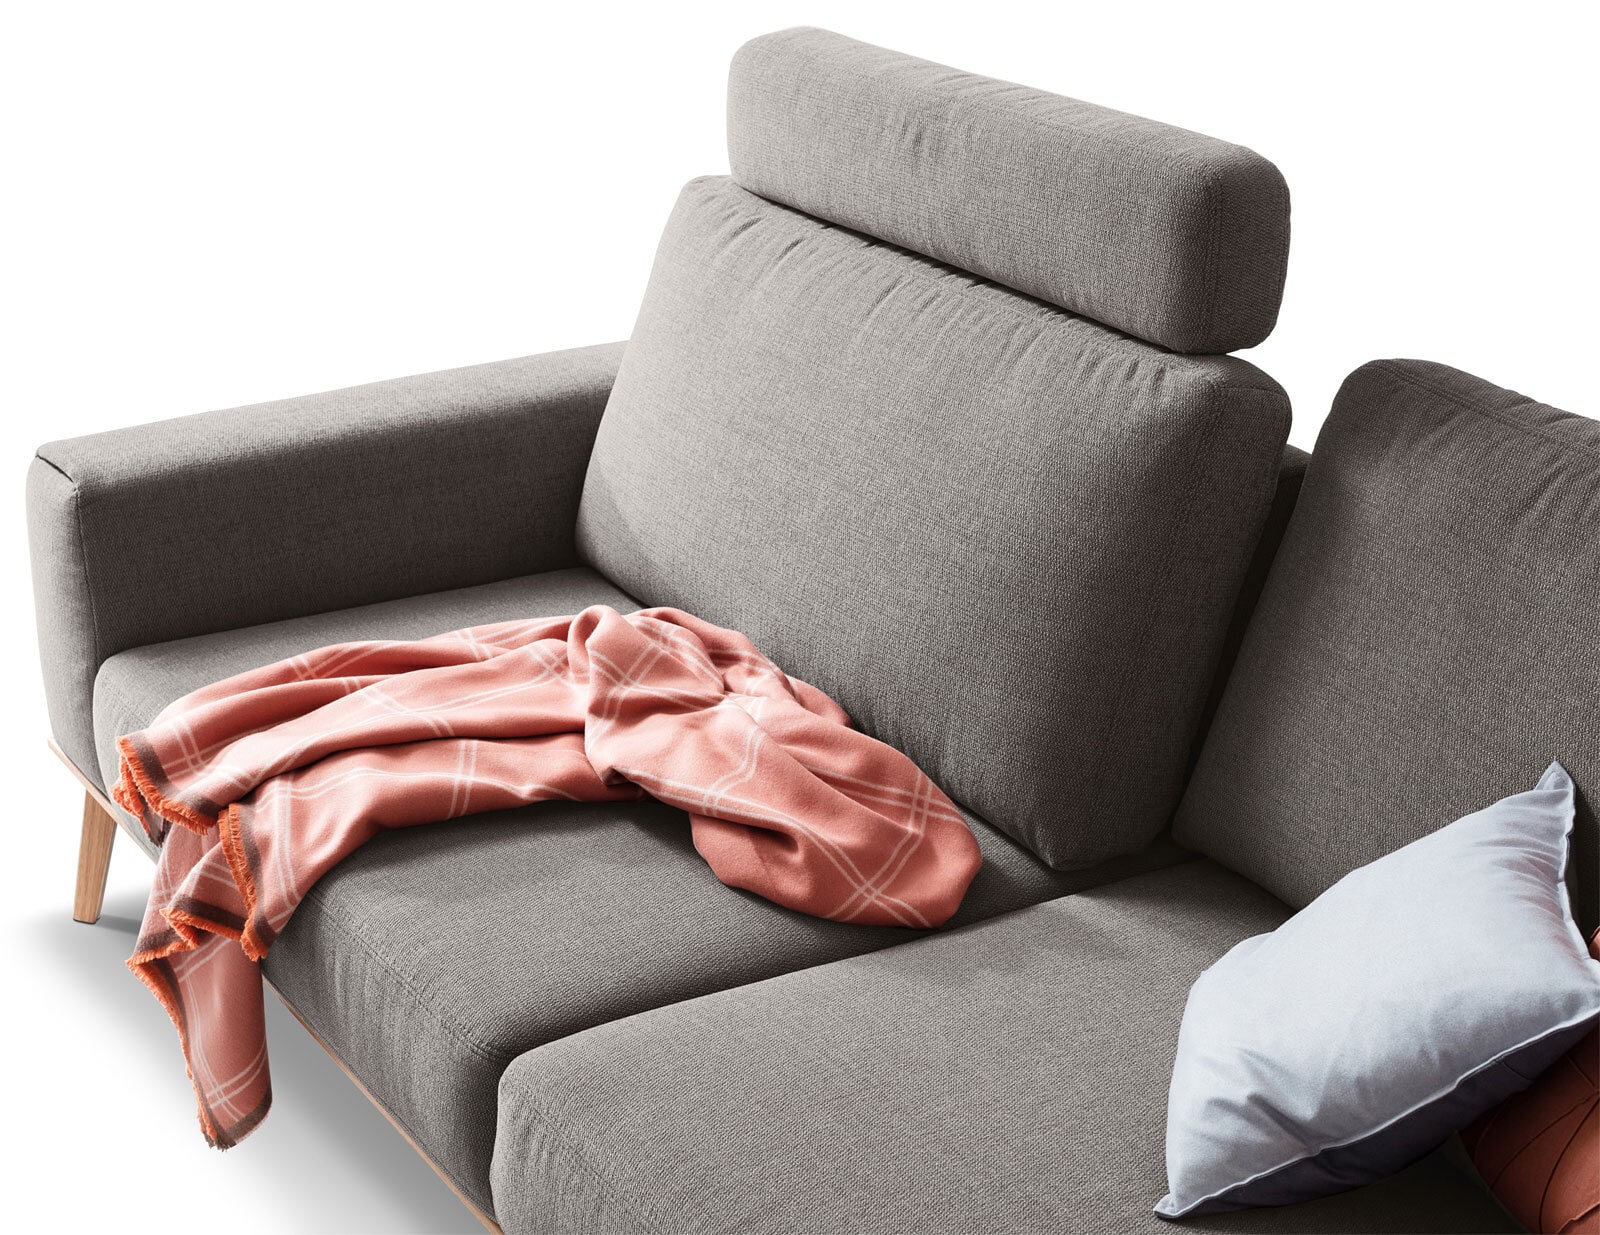 SCHÖNER WOHNEN-Kollektion Sofa 3-Sitzer STAGE Stoff Trend purple-grau